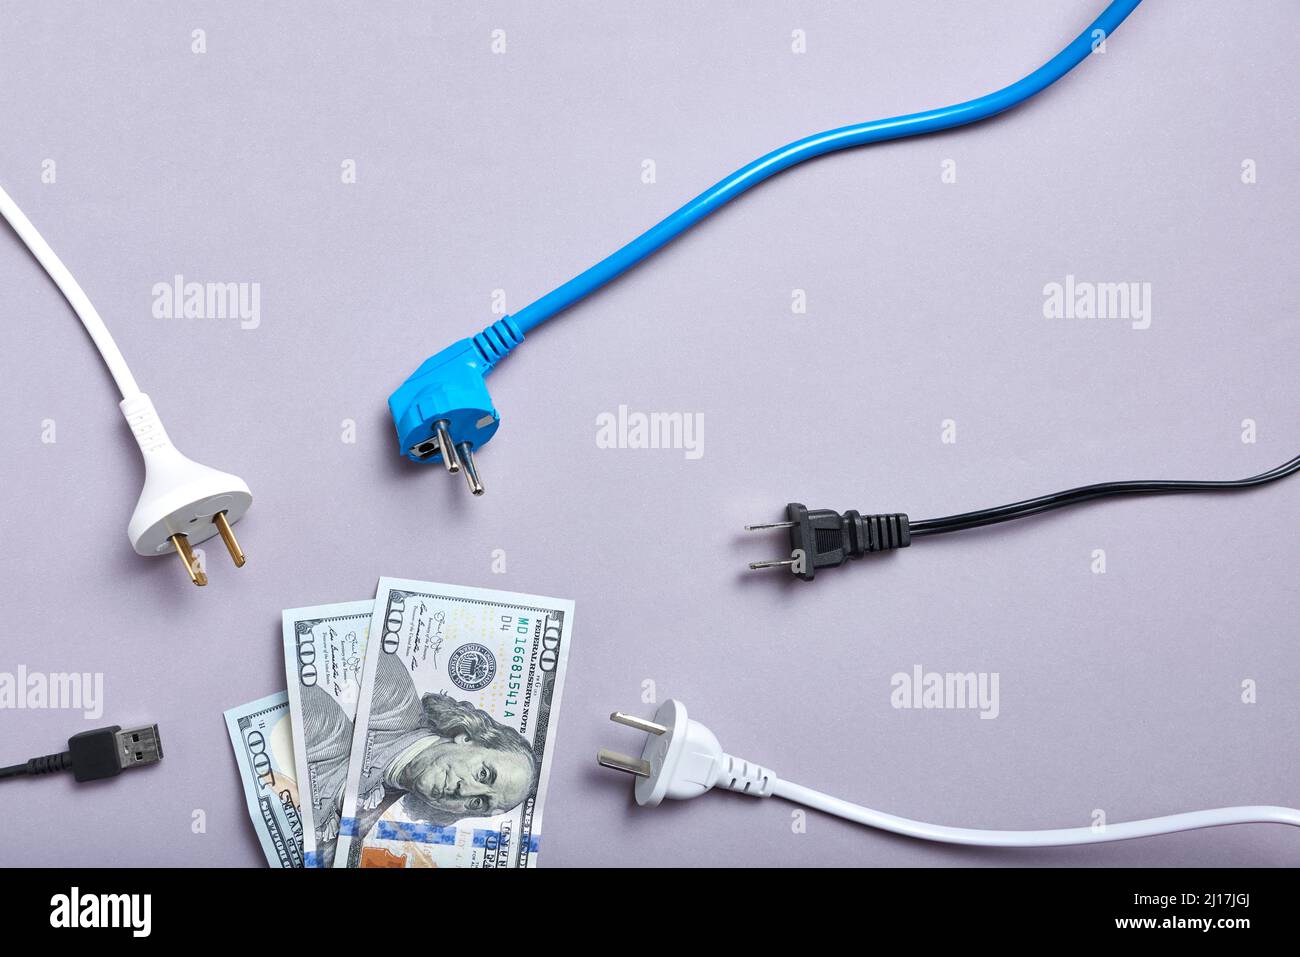 Konzeptionelles Bild über die hohen wirtschaftlichen Kosten von Strom und die Zunahme der Energiepreise: Stromkabel rund um die Dollar-Banknote. Stockfoto